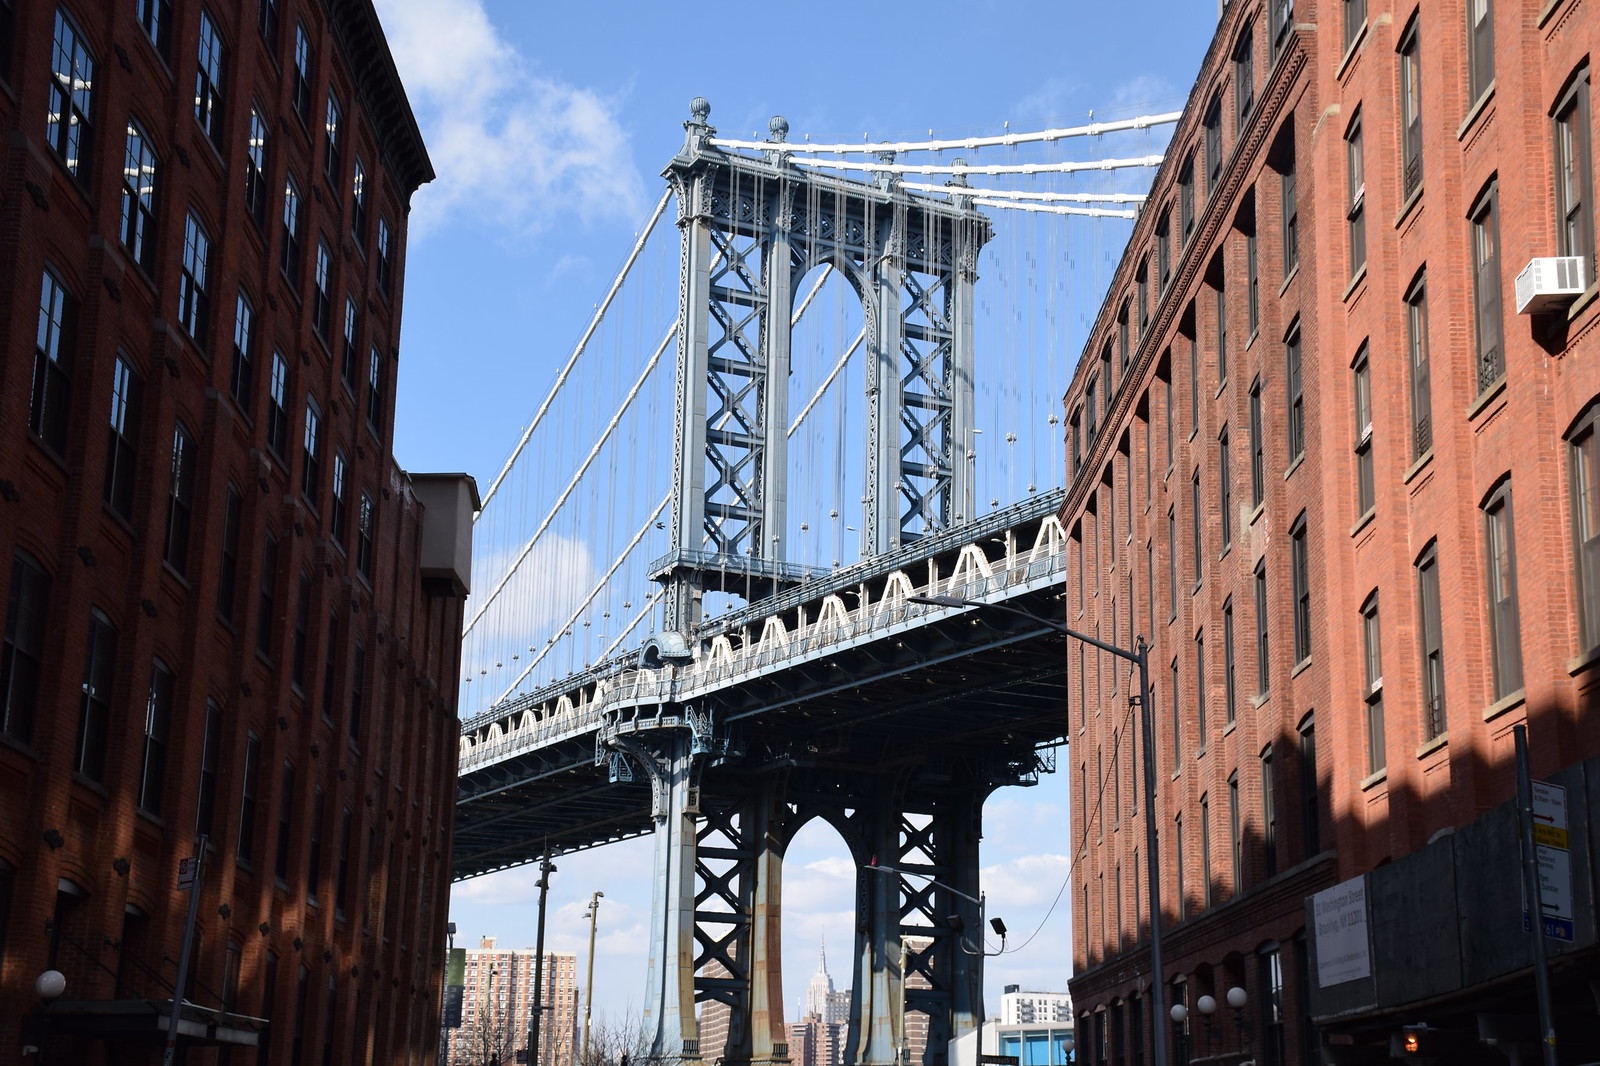 Vista del puente de Manhattan desde las calles de Brooklyn